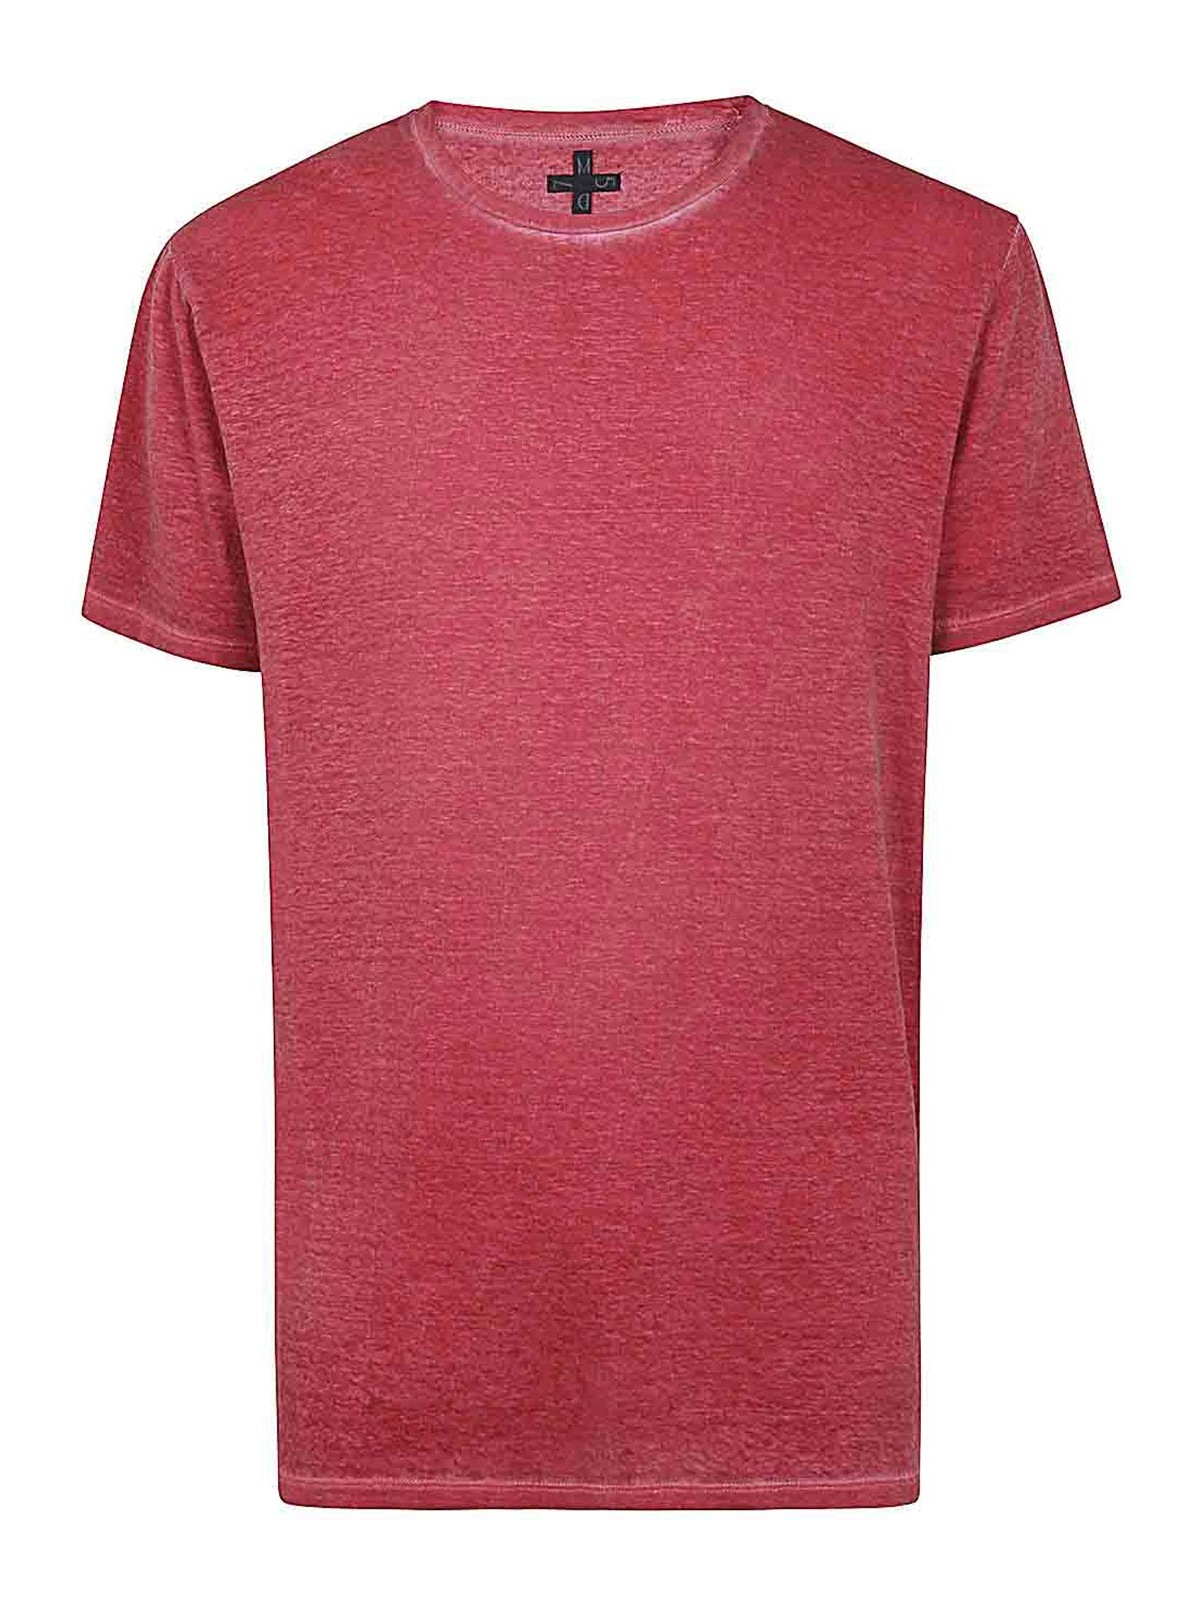 Shop Md75 Camiseta - Rojo In Red